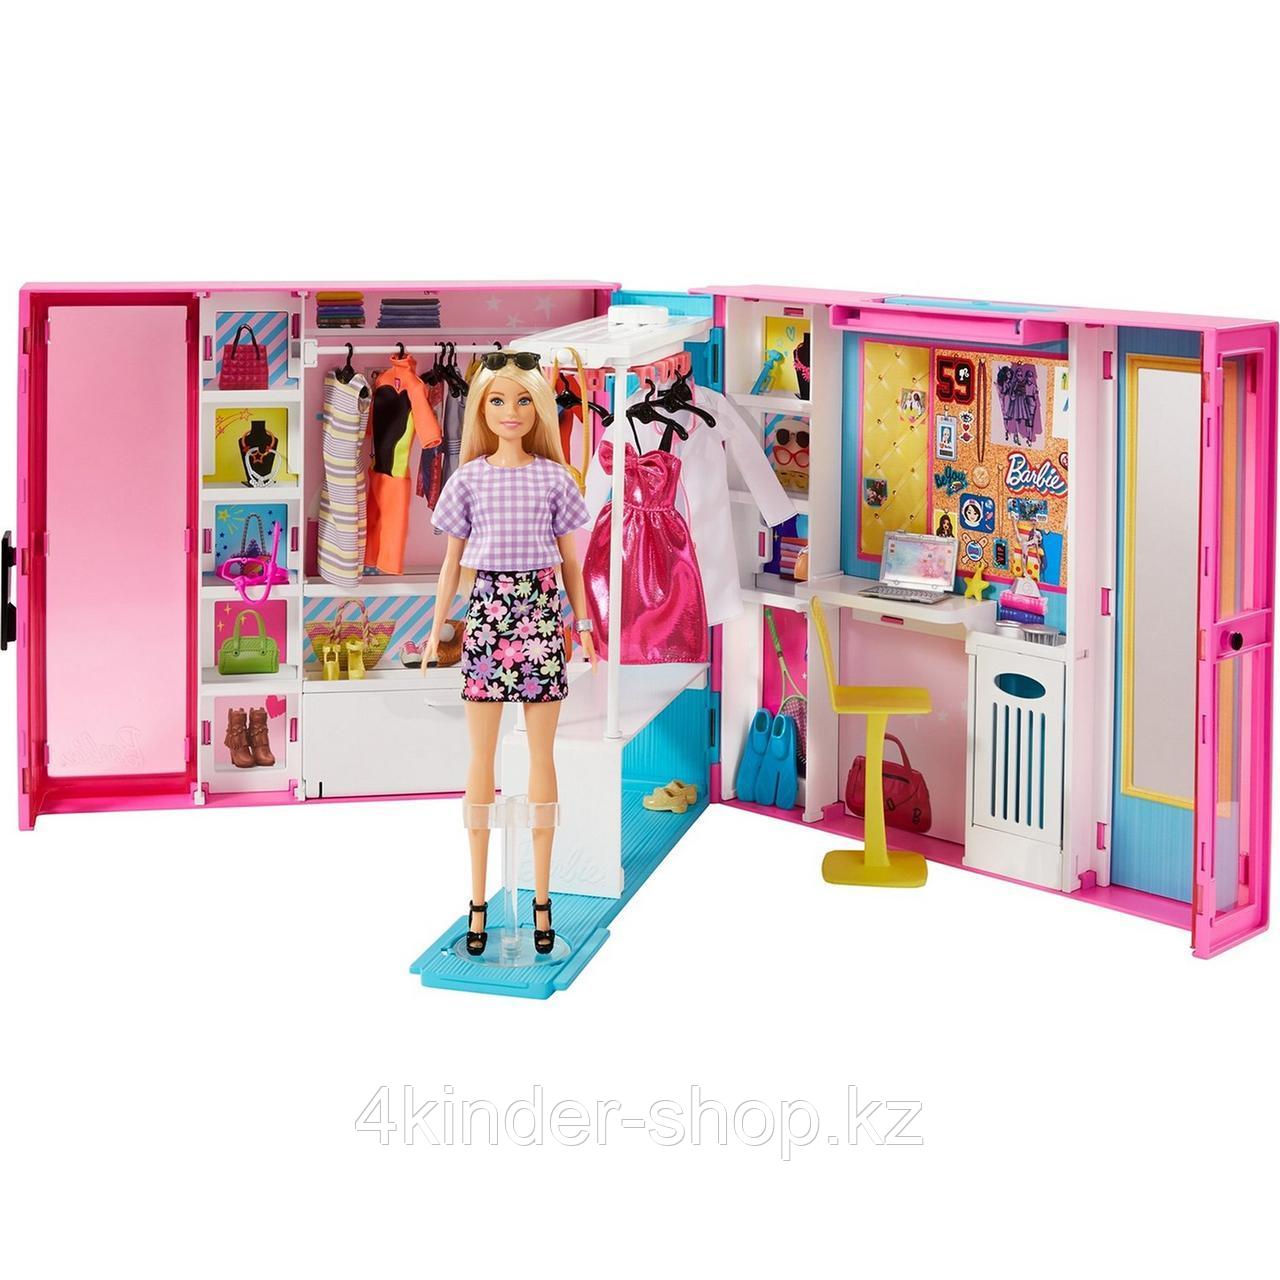 Barbie Игра с модой Гардероб мечты GBK10